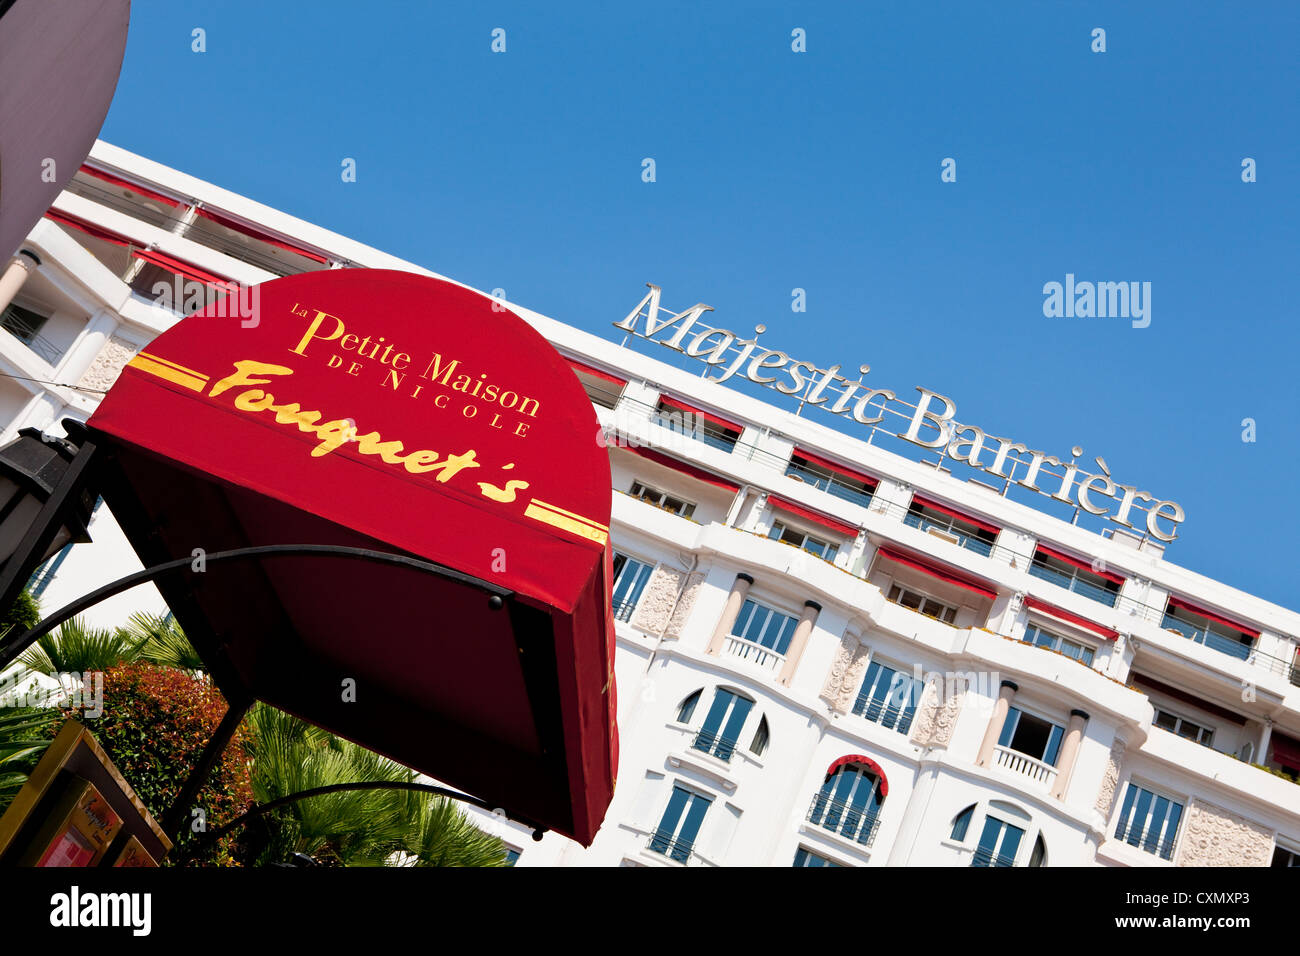 Le Fouquet' s restaurant du Majestic Barrière, célèbre Grand Hôtel de prestige sur la Croisette à Cannes, France Banque D'Images